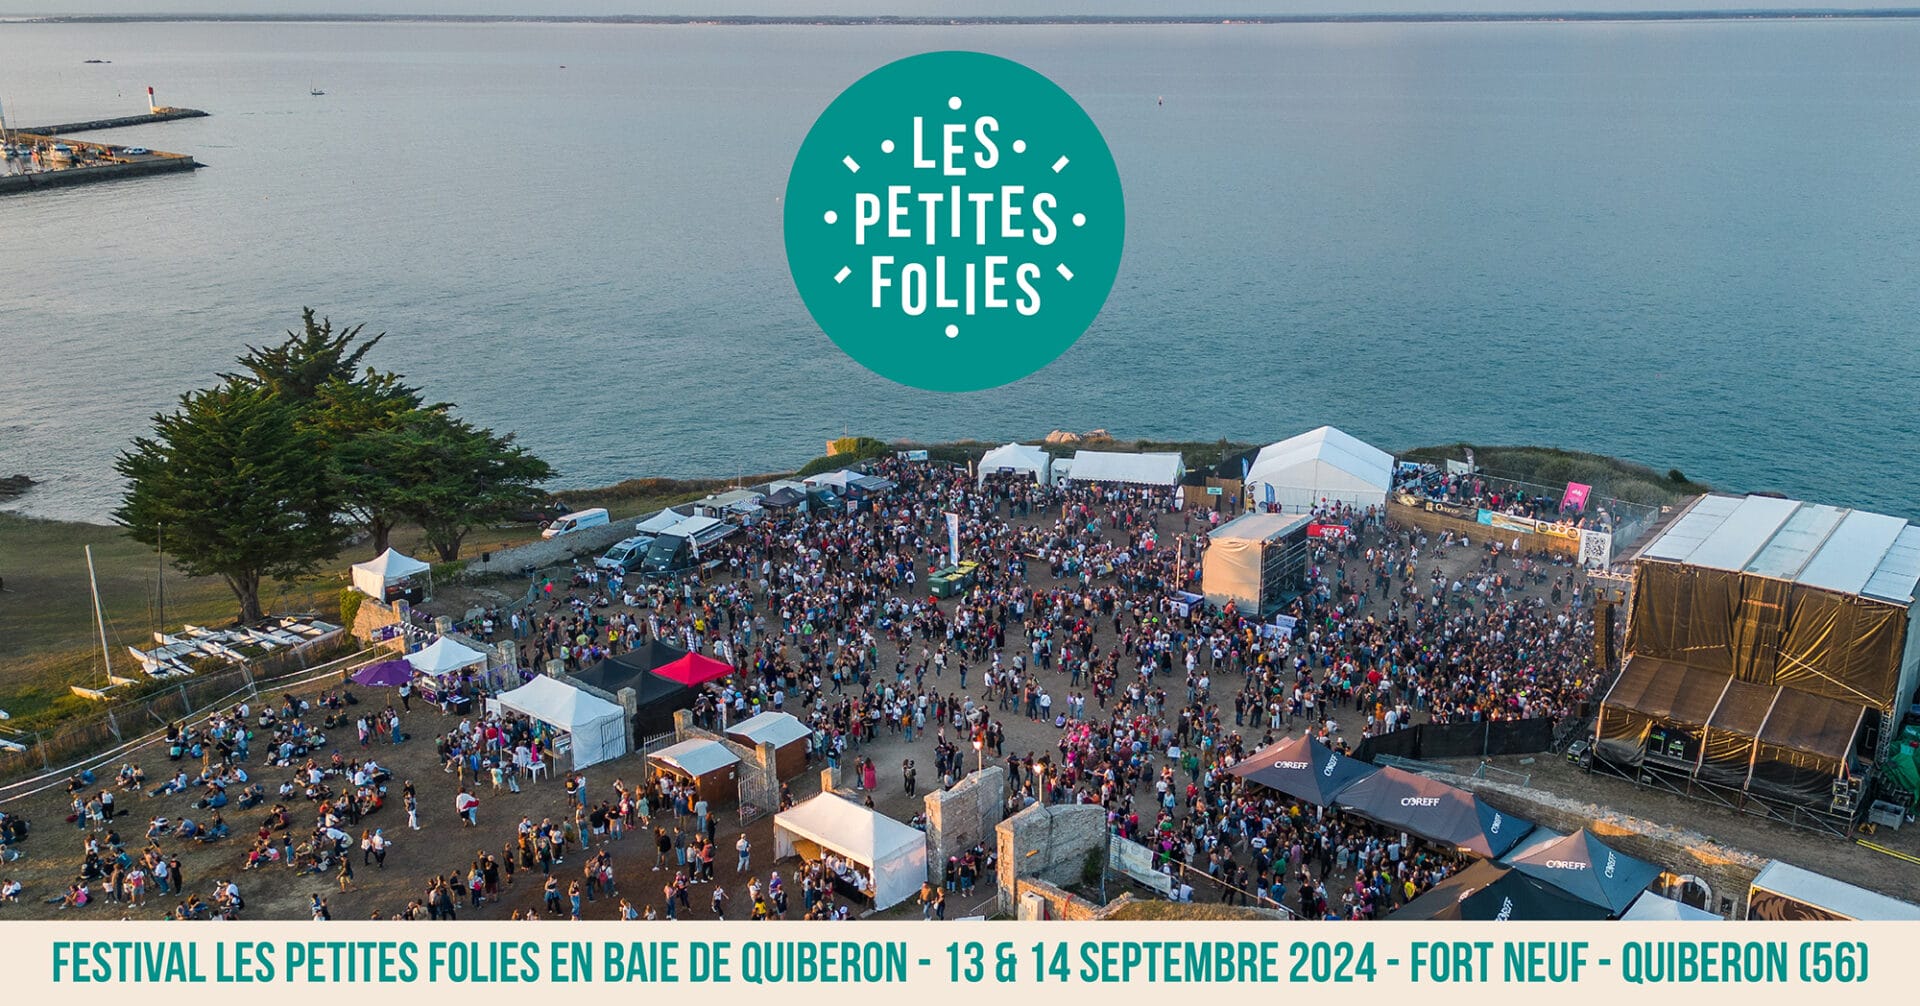 Les Petites Folies en Baie de Quiberon, les 13 et 14 septembre 2024 (56)